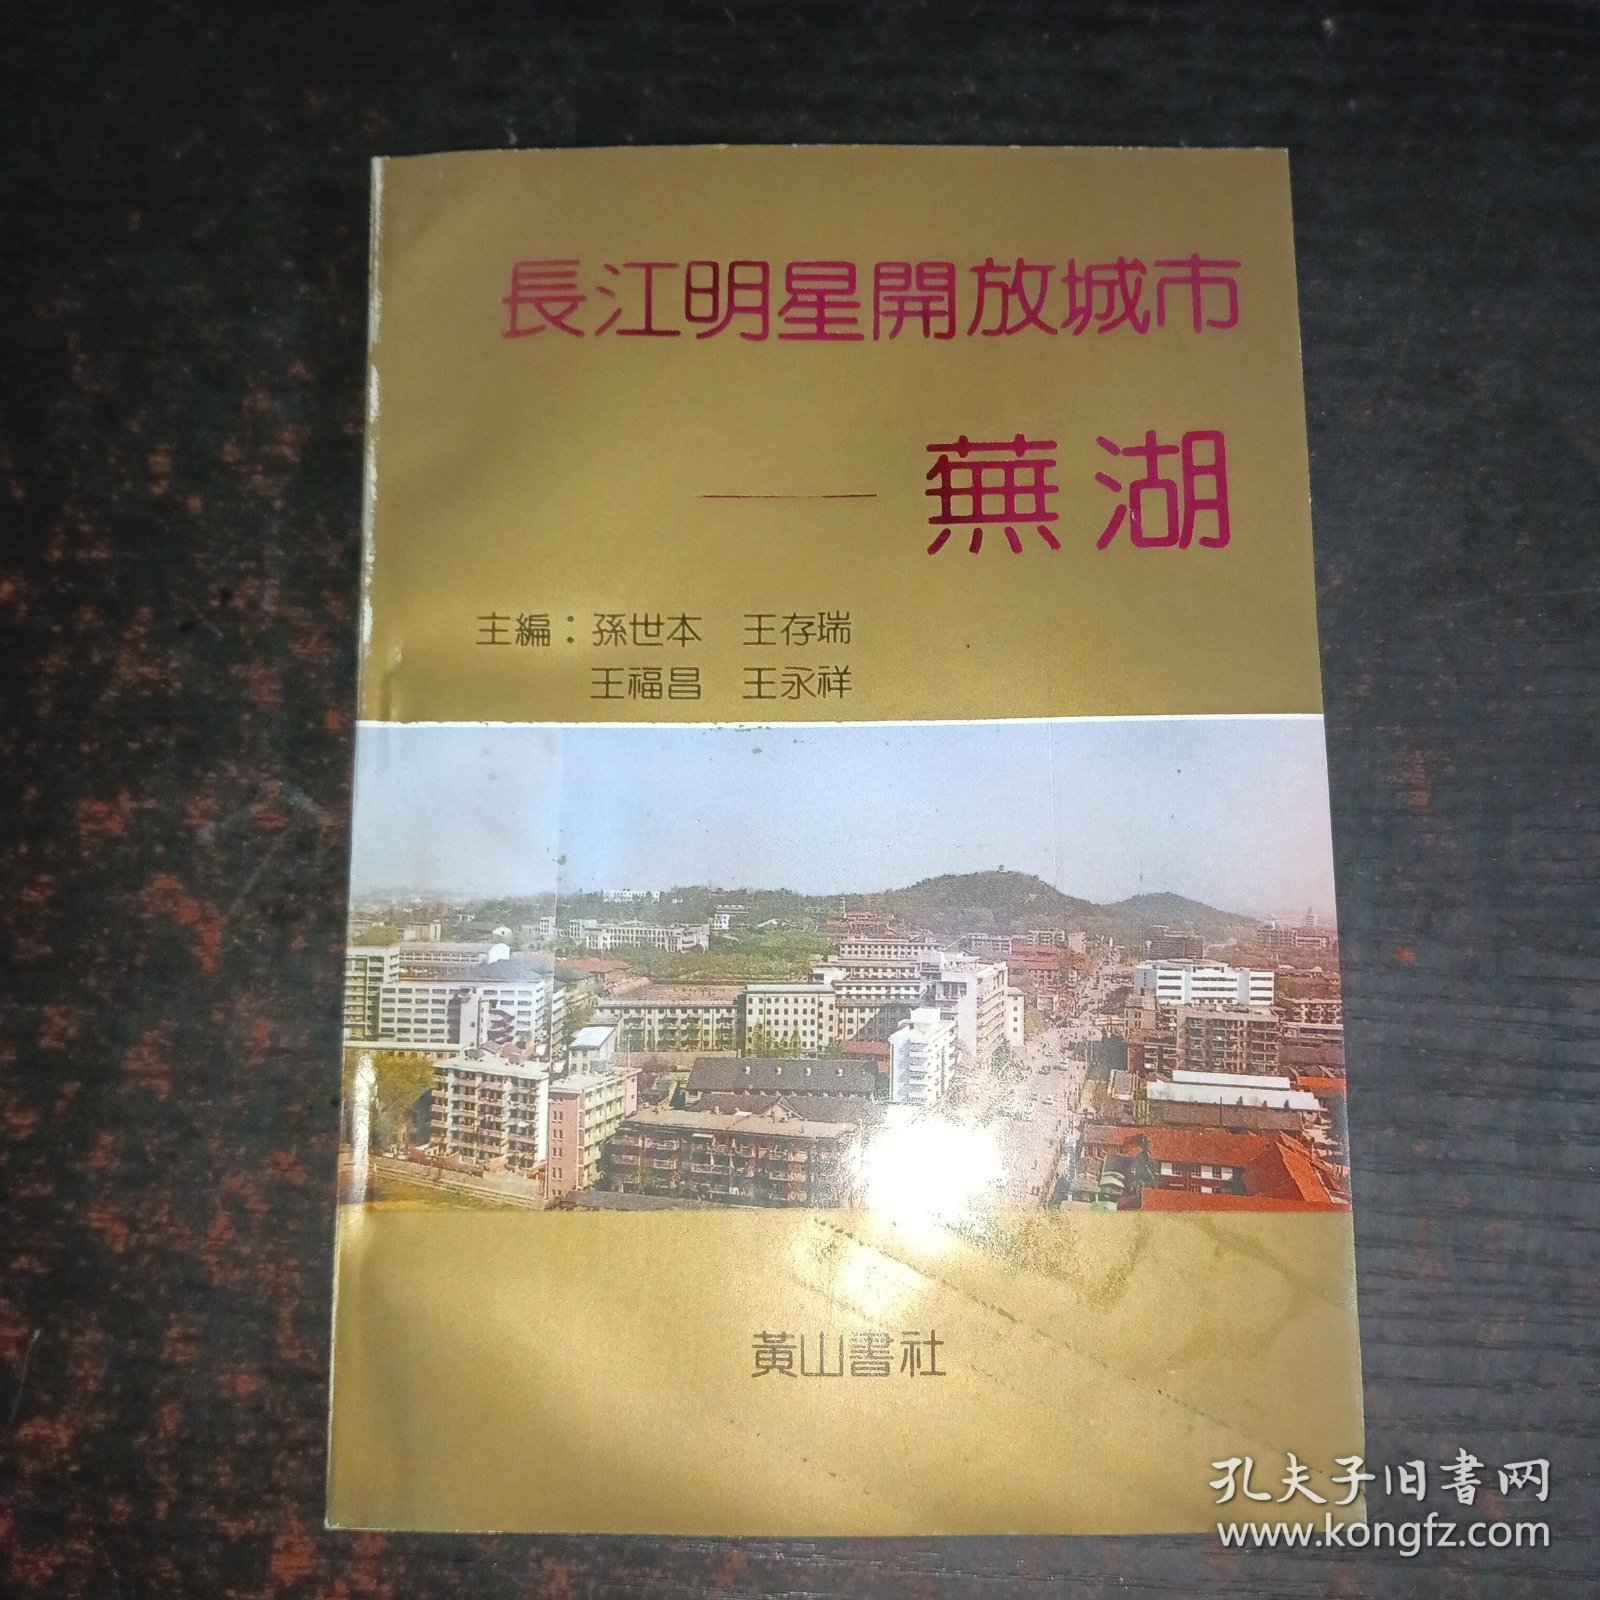 长江明星开放城市——芜湖、。